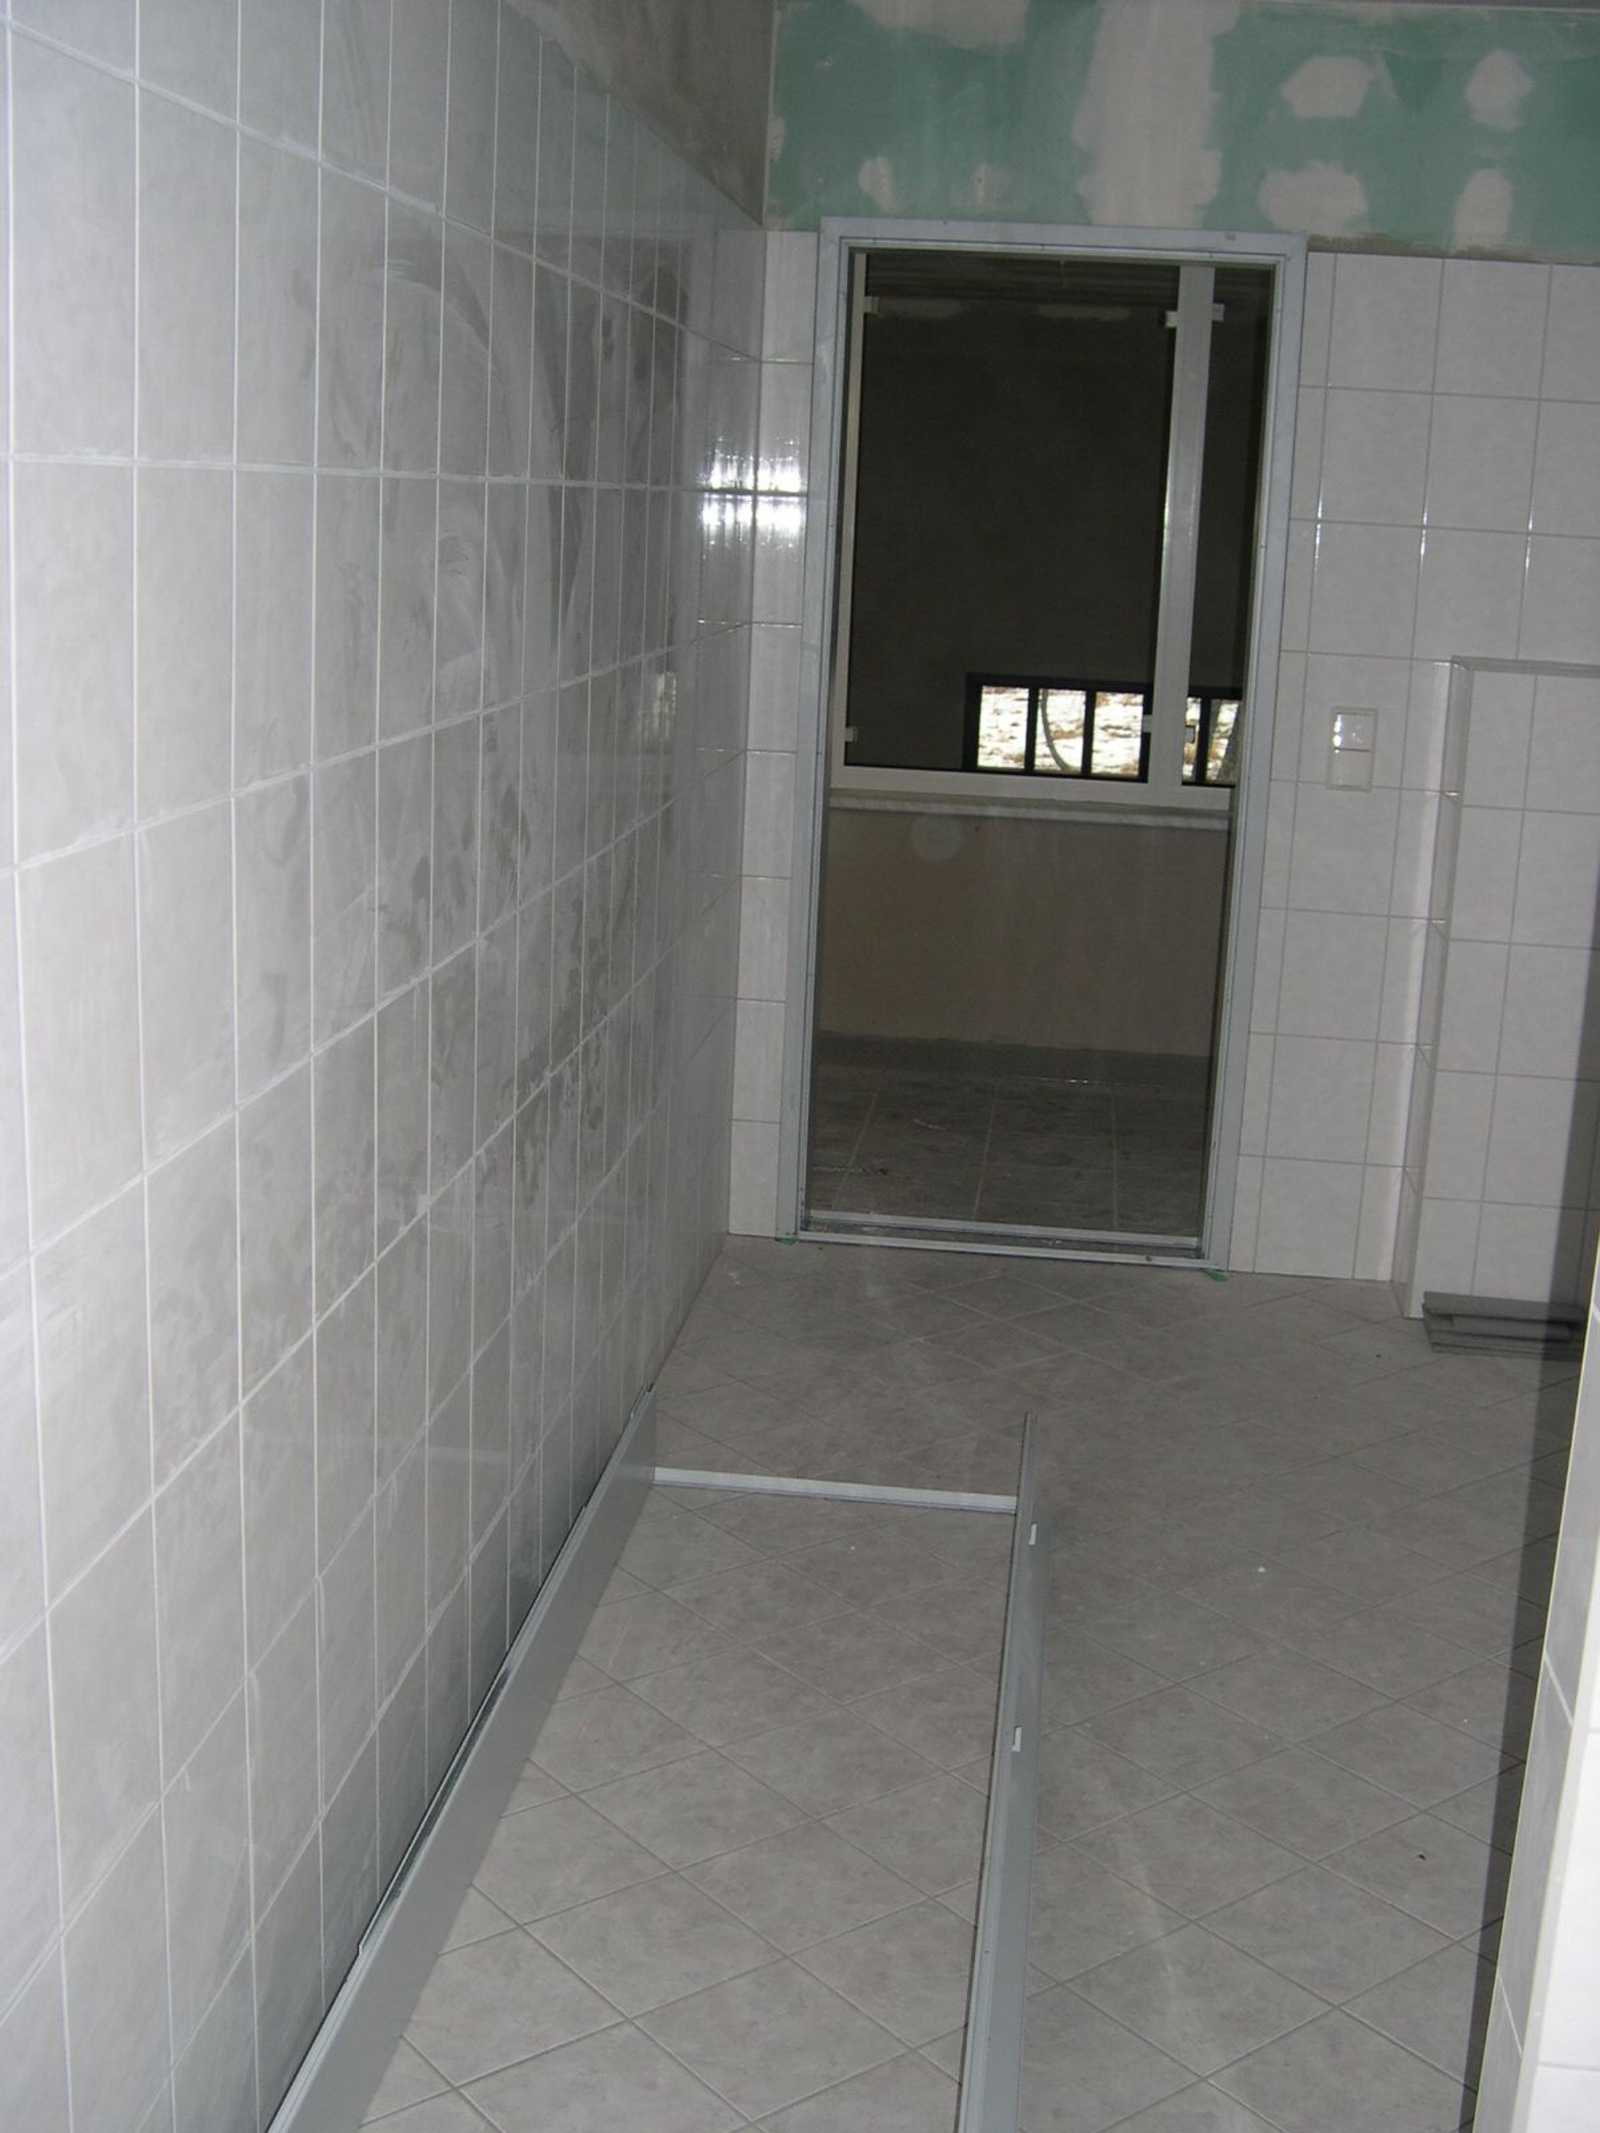 Der Sanitärraum im Obergeschoß des Mehrzweckgebäudes hat seine Türzarge erhalten, auf dem Fußboden liegt die Türzarge für die Toilette.